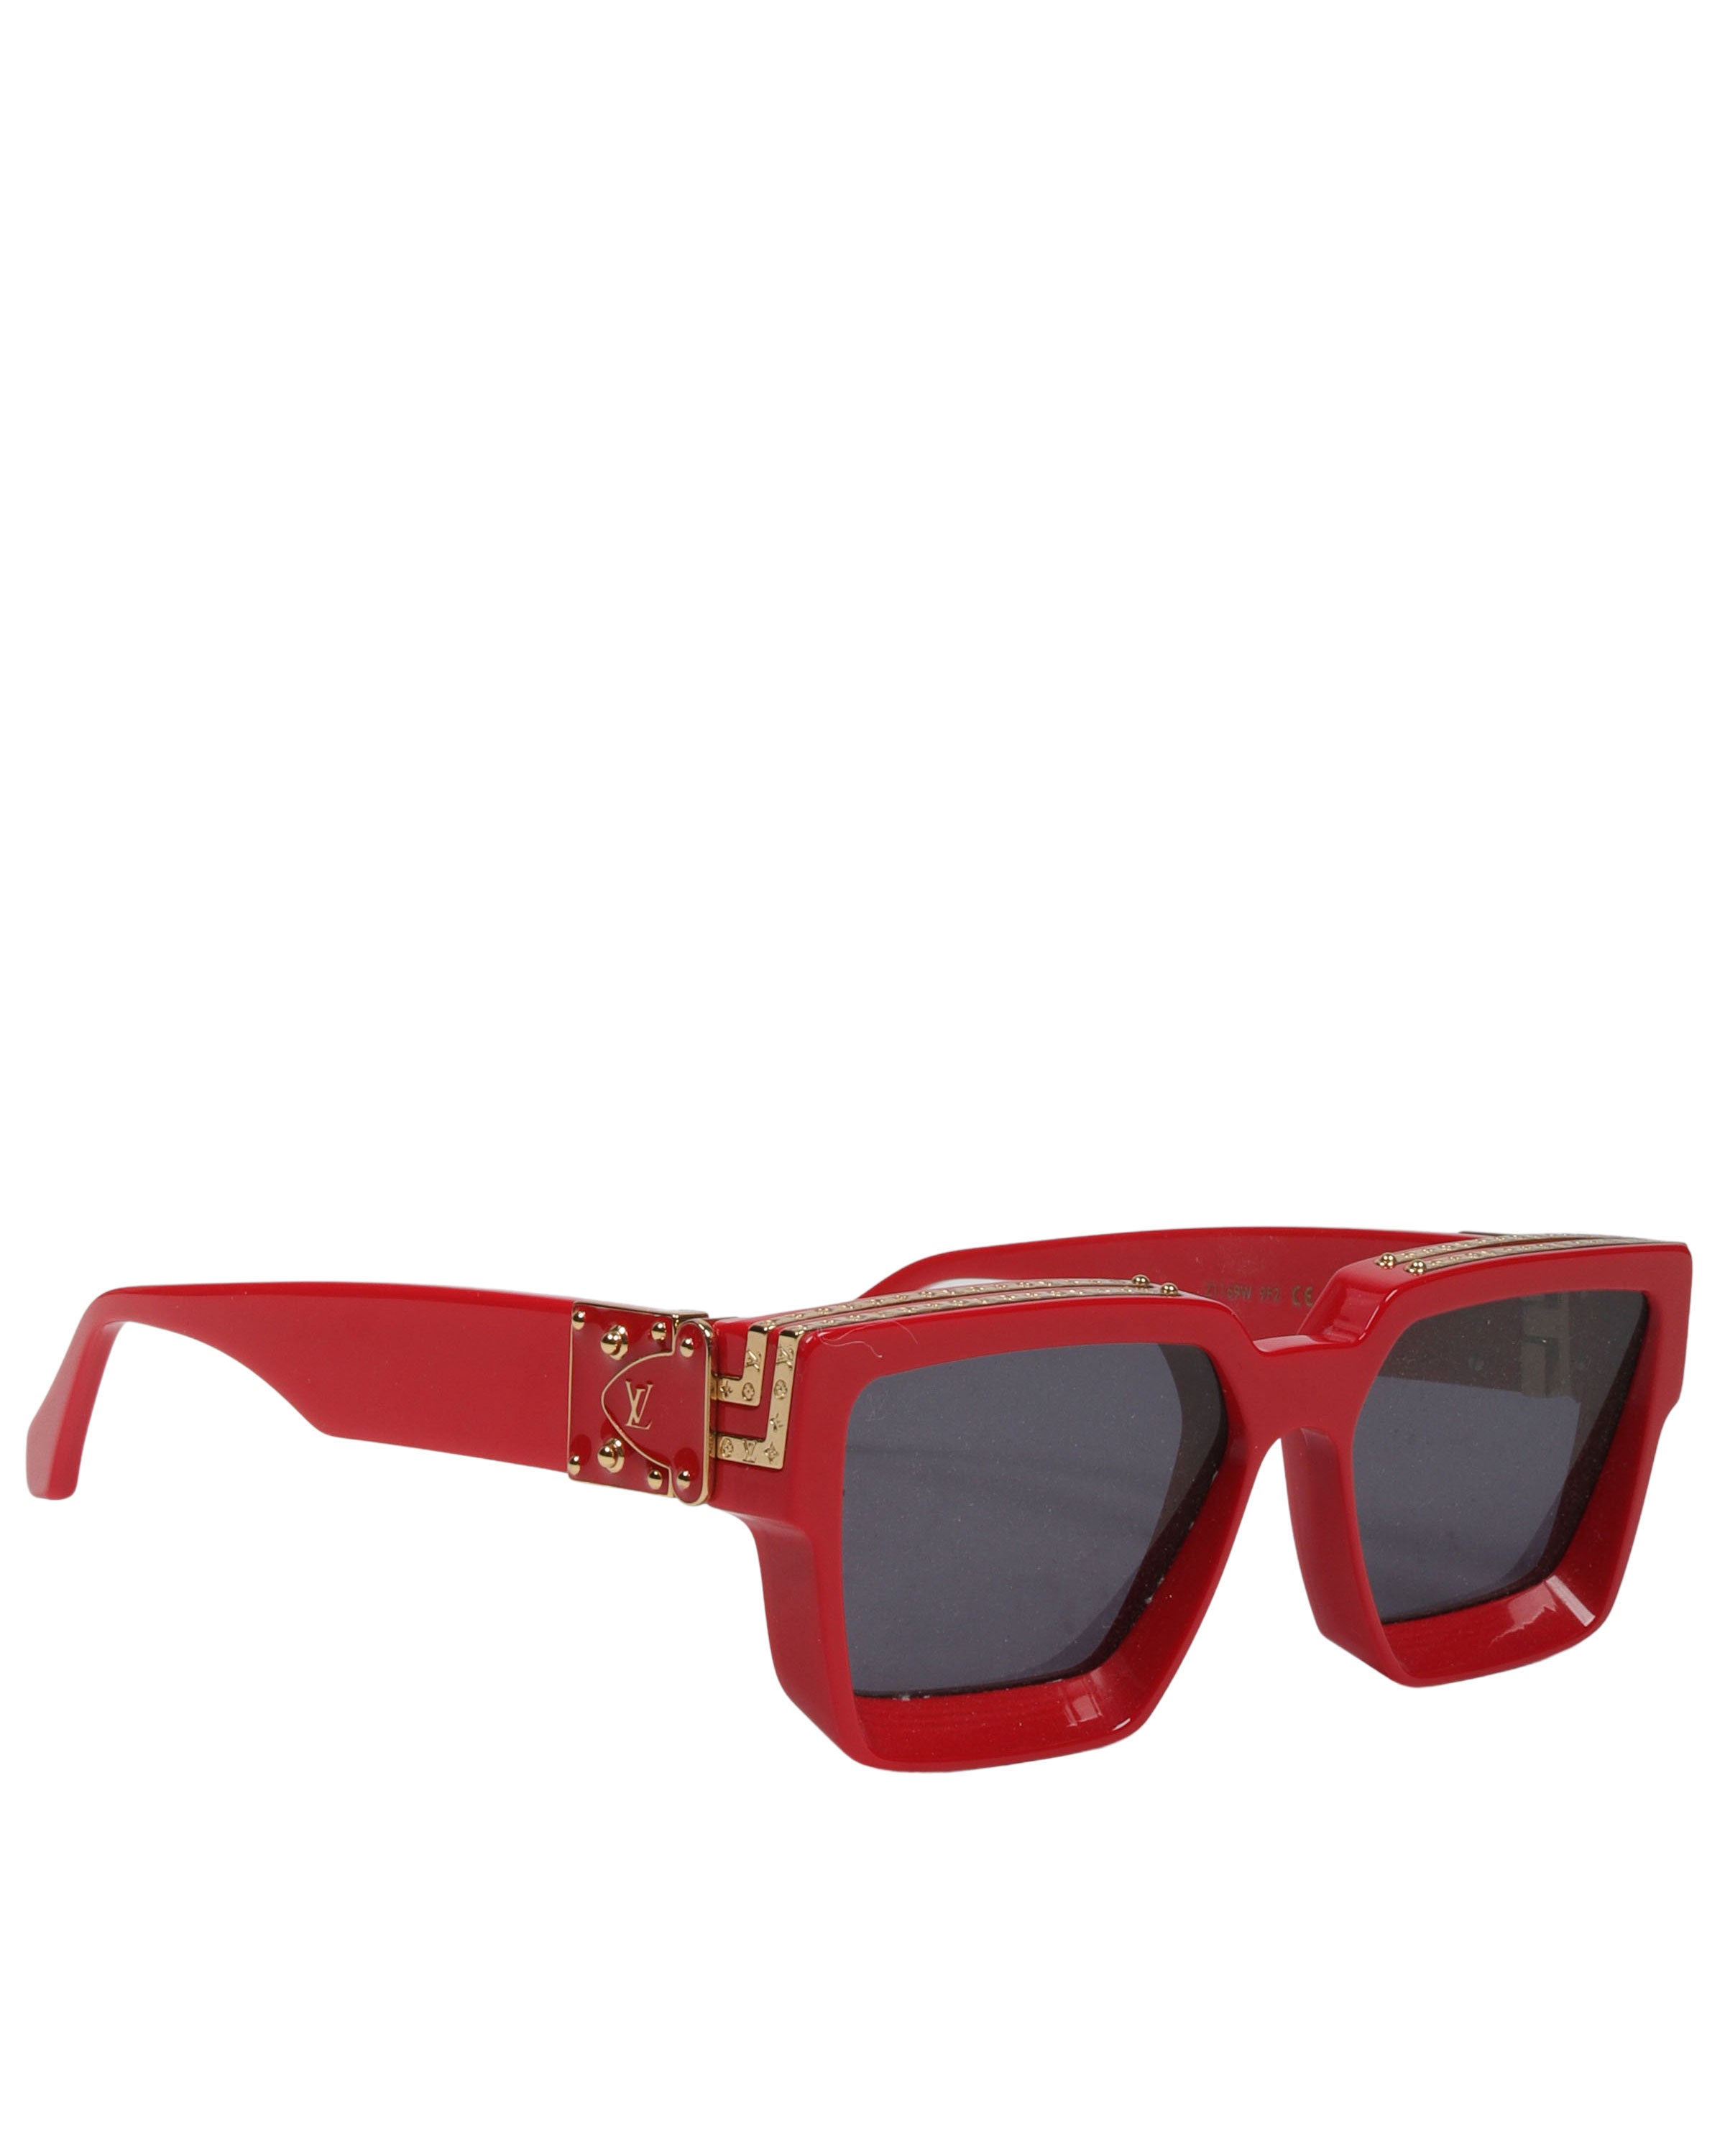 Louis Vuitton Millionaire Sunglasses - 4 For Sale on 1stDibs  louis vuitton  millionaire sunglasses original price, louis vuitton millionaires, lv  millionaire sunglasses red